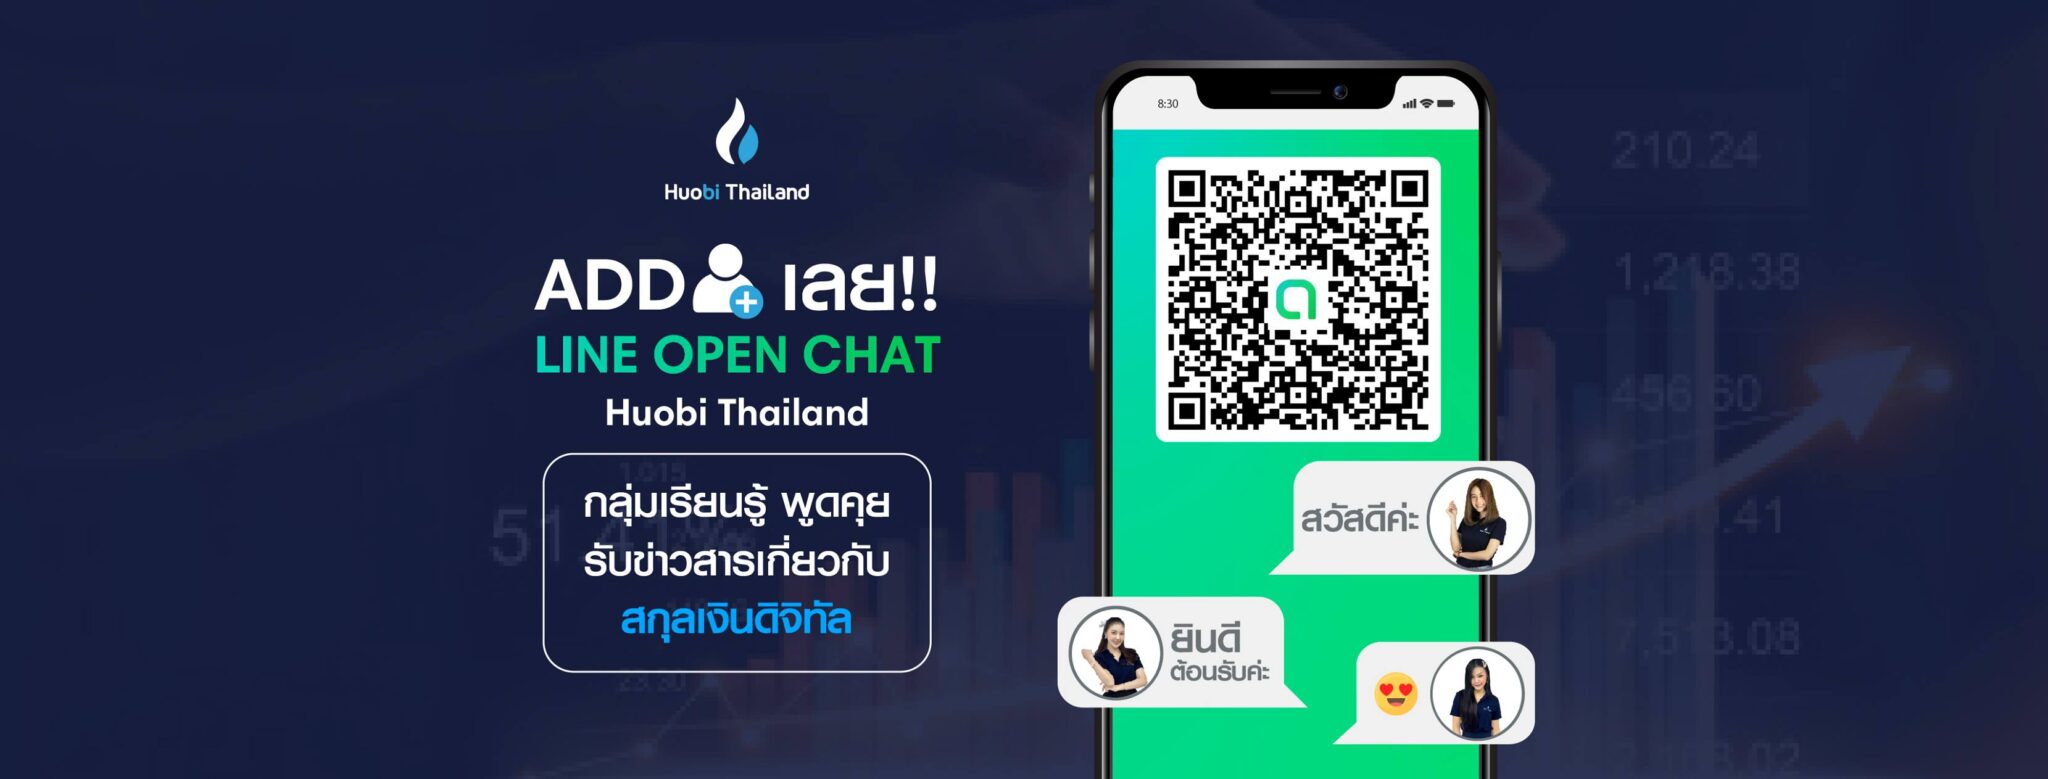 [รีวิว] Huobi Thailand กระดานแลกเปลี่ยน Cryptocurrency จาก ...